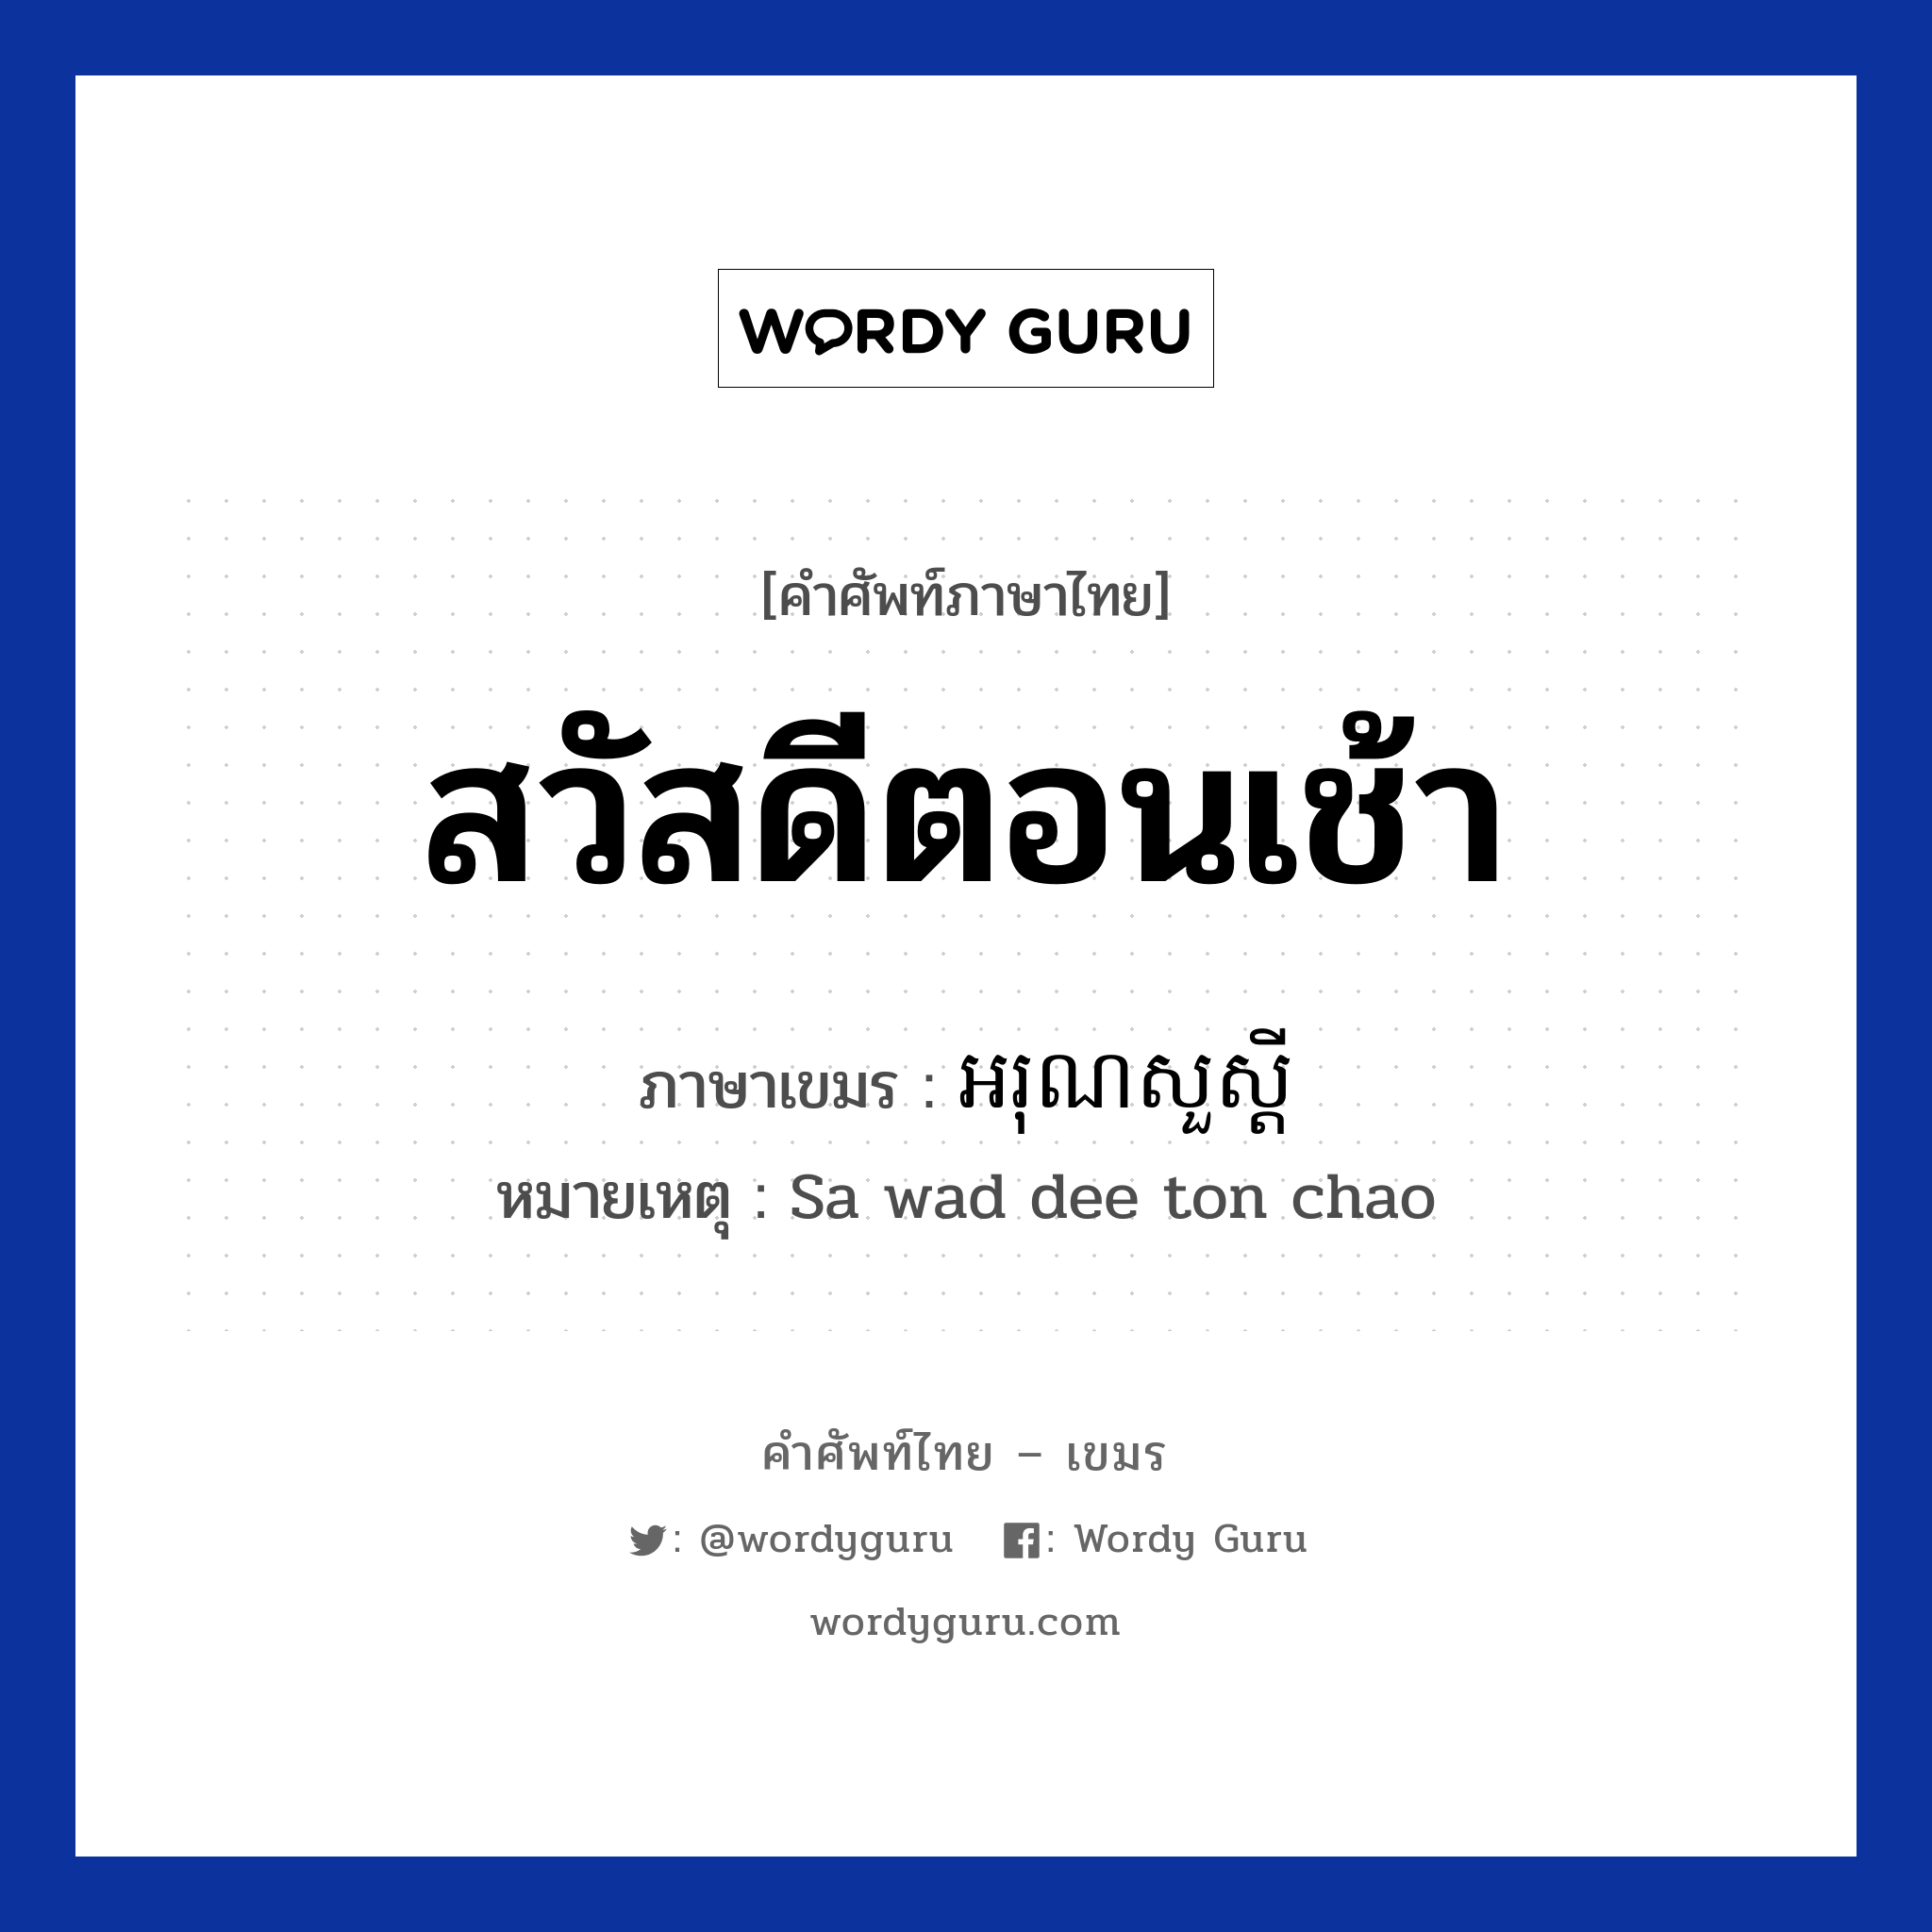 สวัสดีตอนเช้า ภาษาเขมรคืออะไร, คำศัพท์ภาษาไทย - เขมร สวัสดีตอนเช้า ภาษาเขมร អរុណសួស្ដី หมวด ทักทาย หมายเหตุ Sa wad dee ton chao Aroun suo sdei หมวด ทักทาย